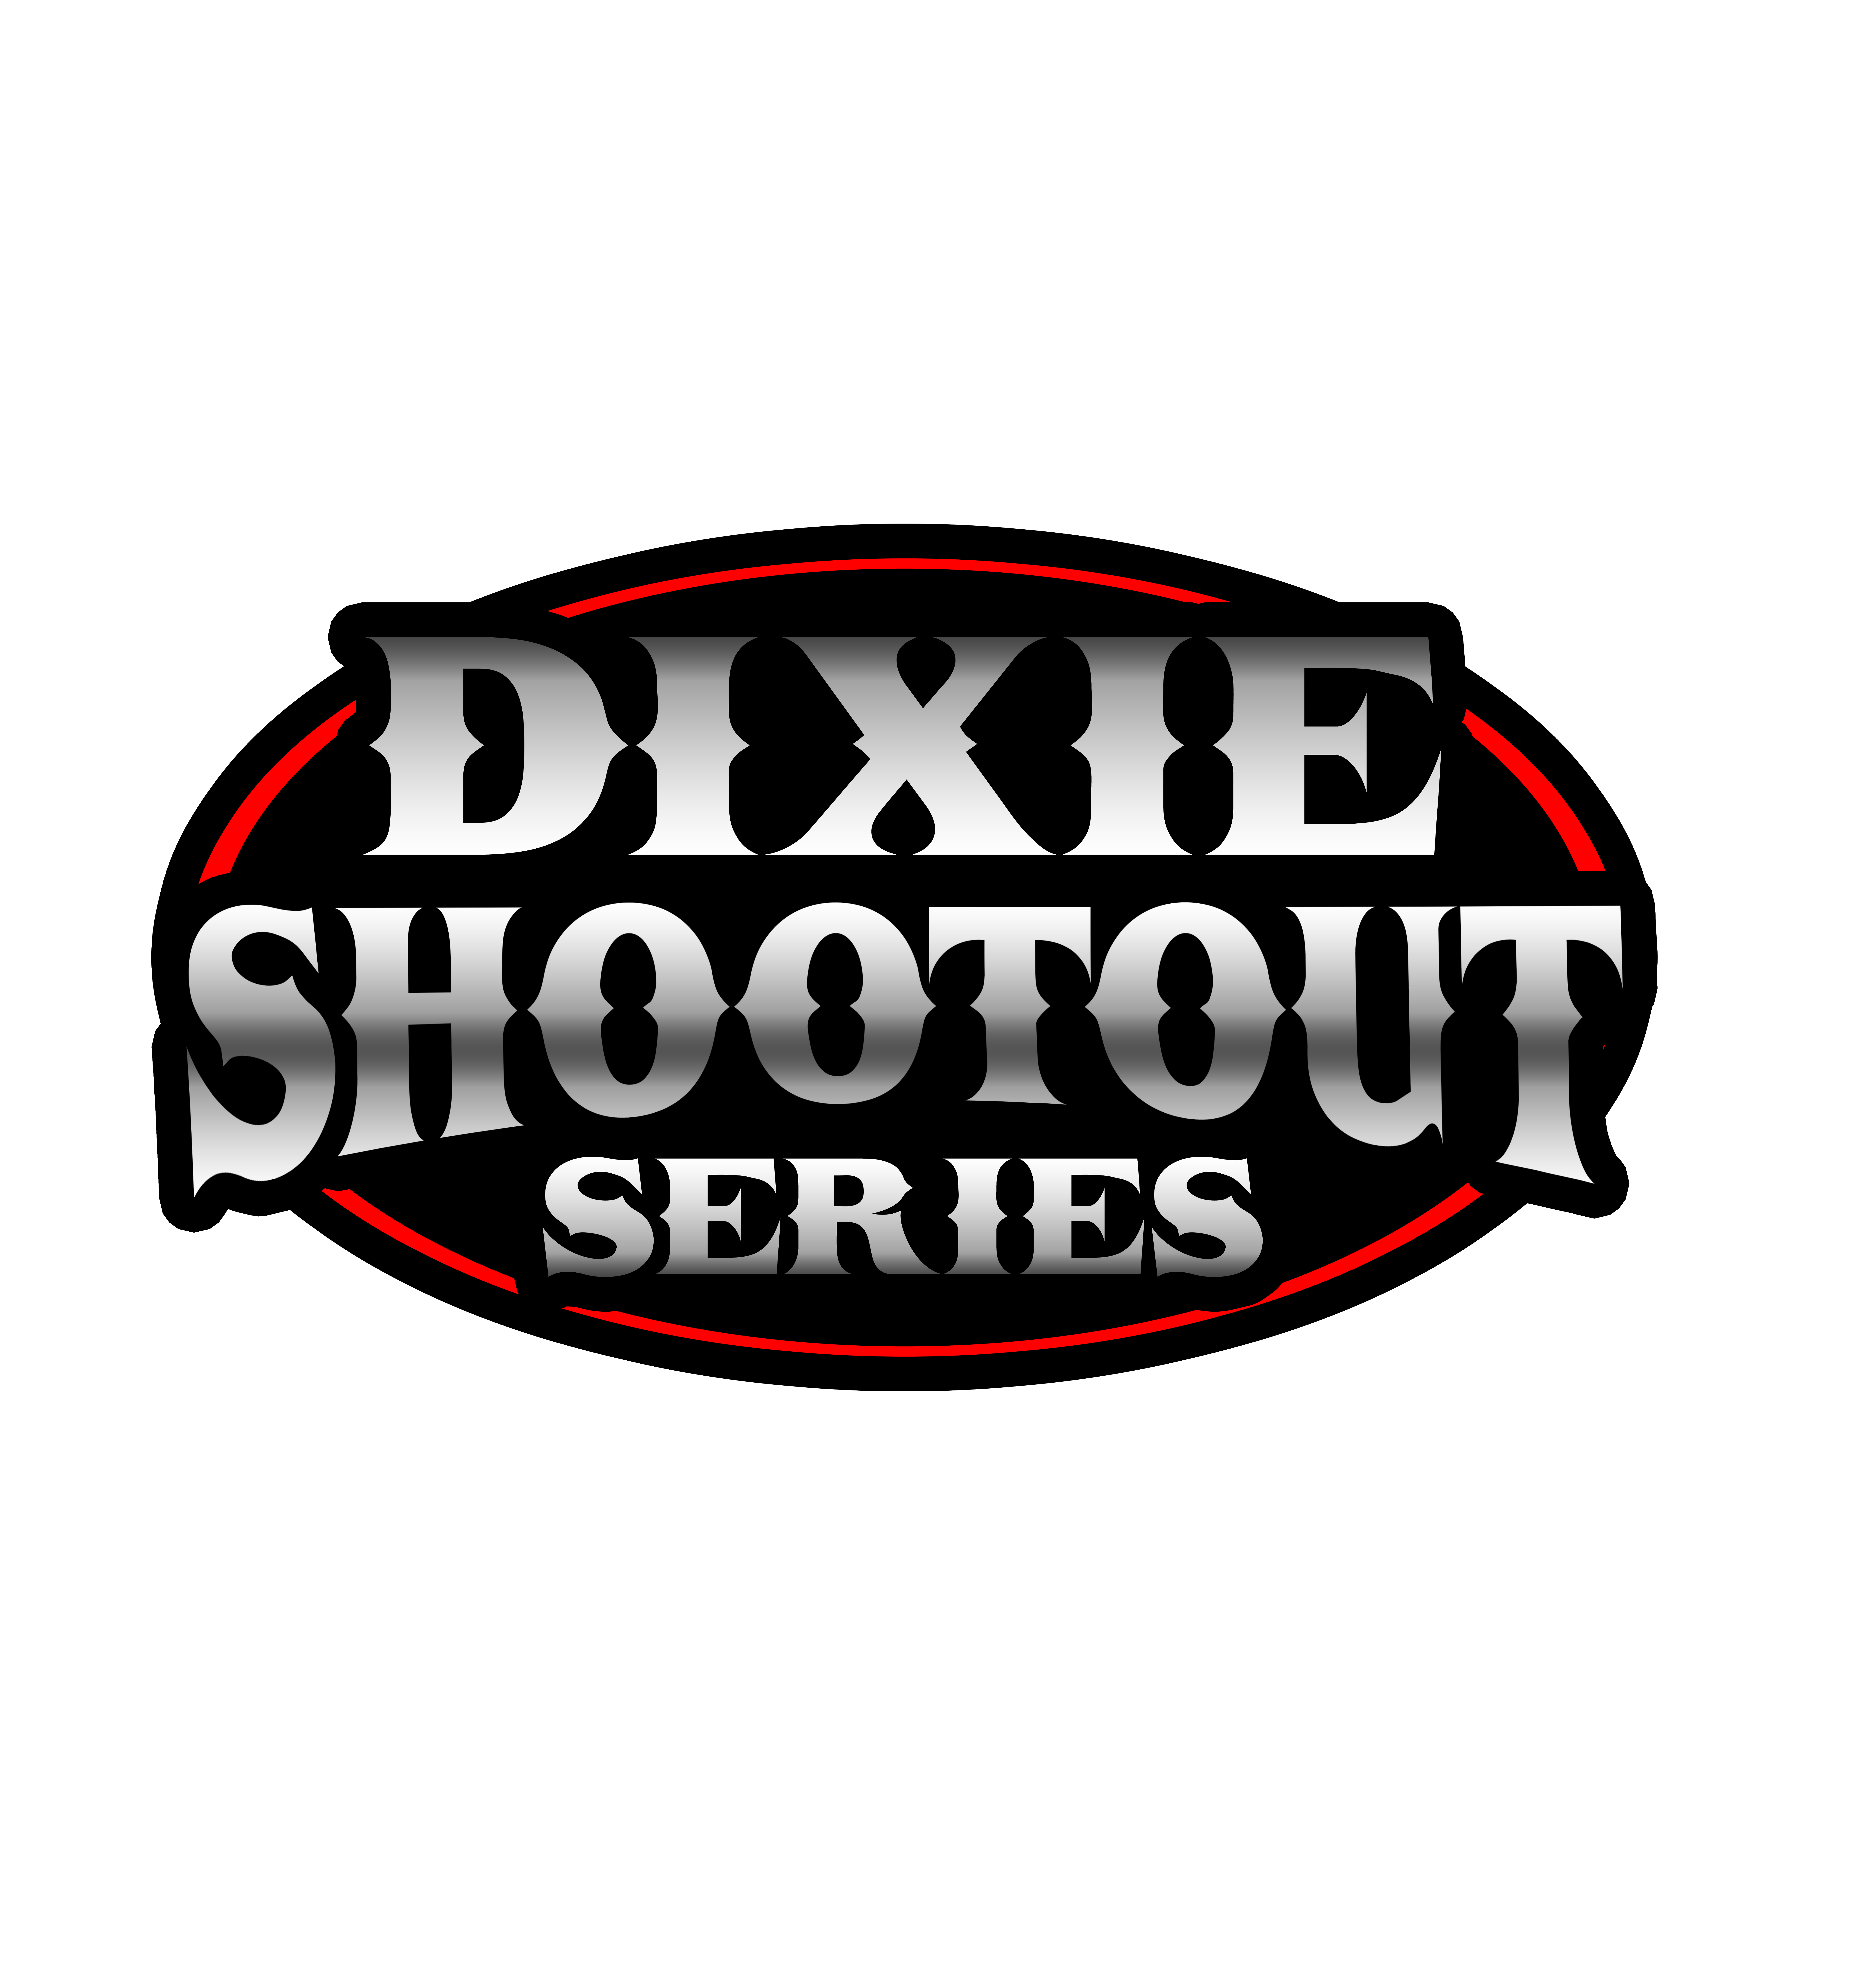 Dixie-Shootout-2020